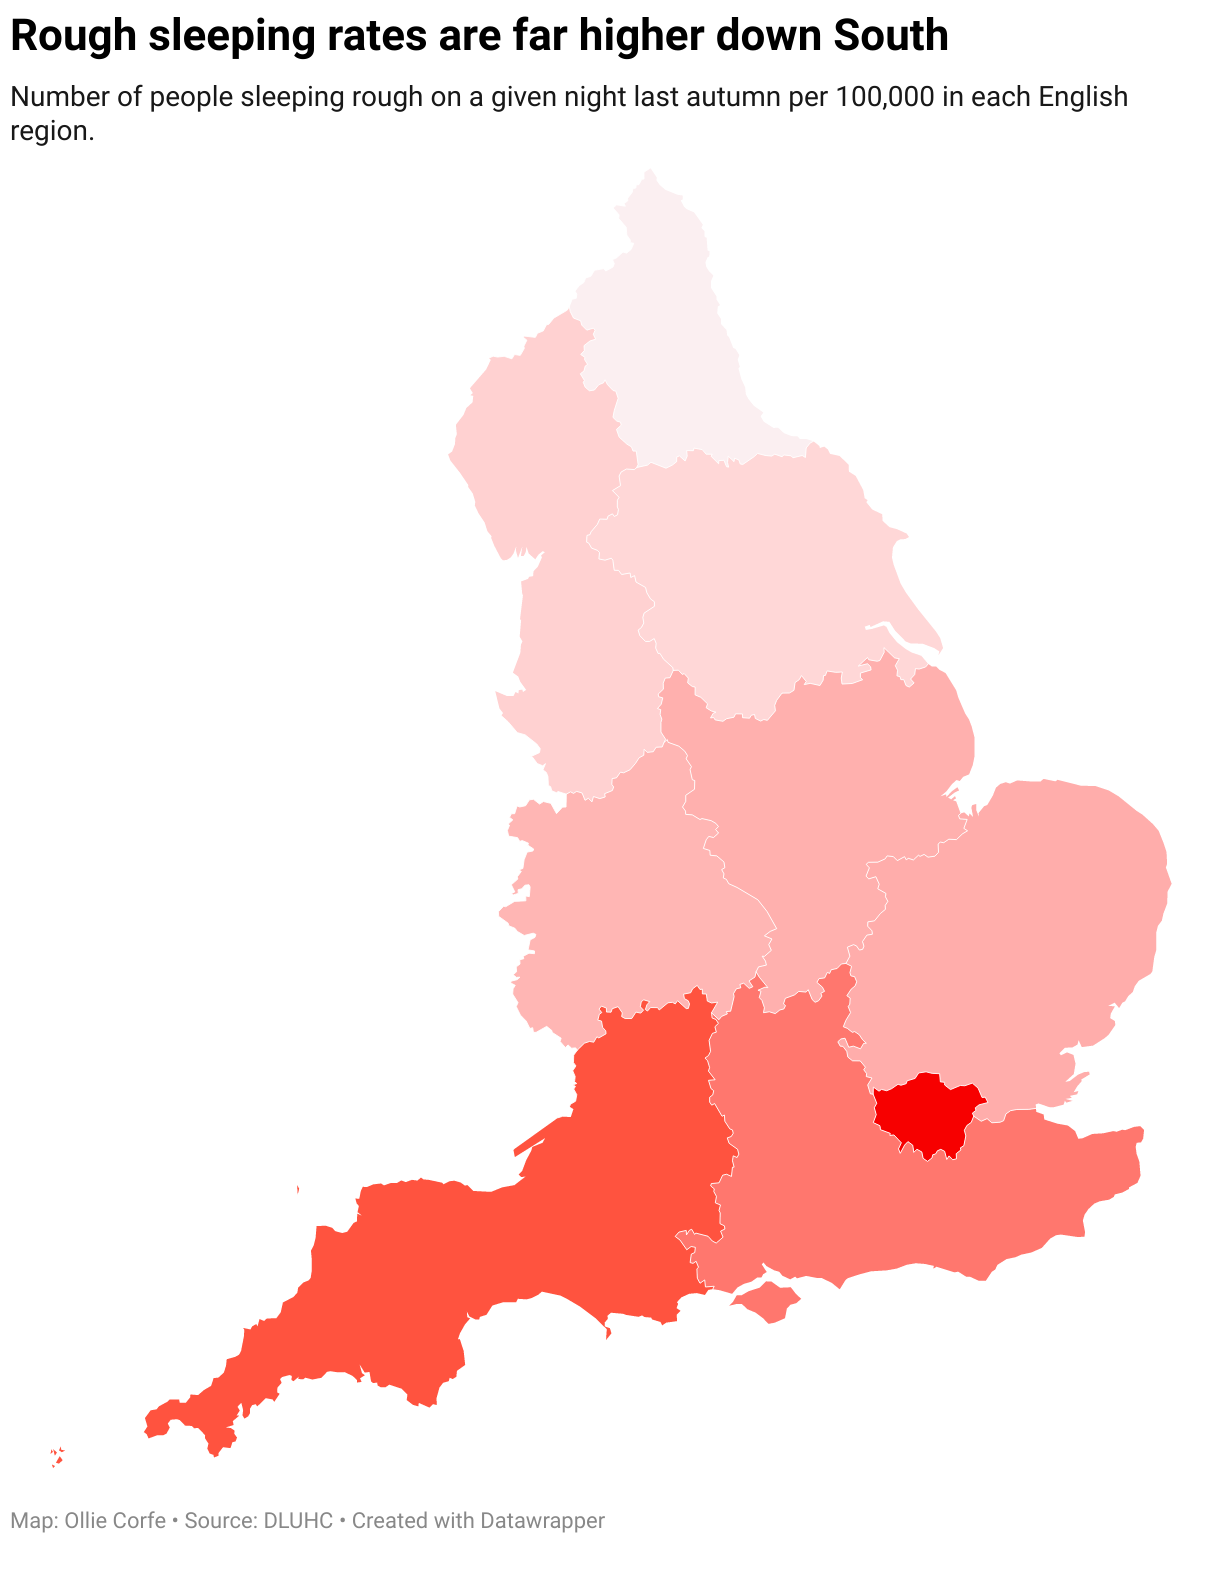 Karte der englischen Regionen nach Obdachlosenquoten.